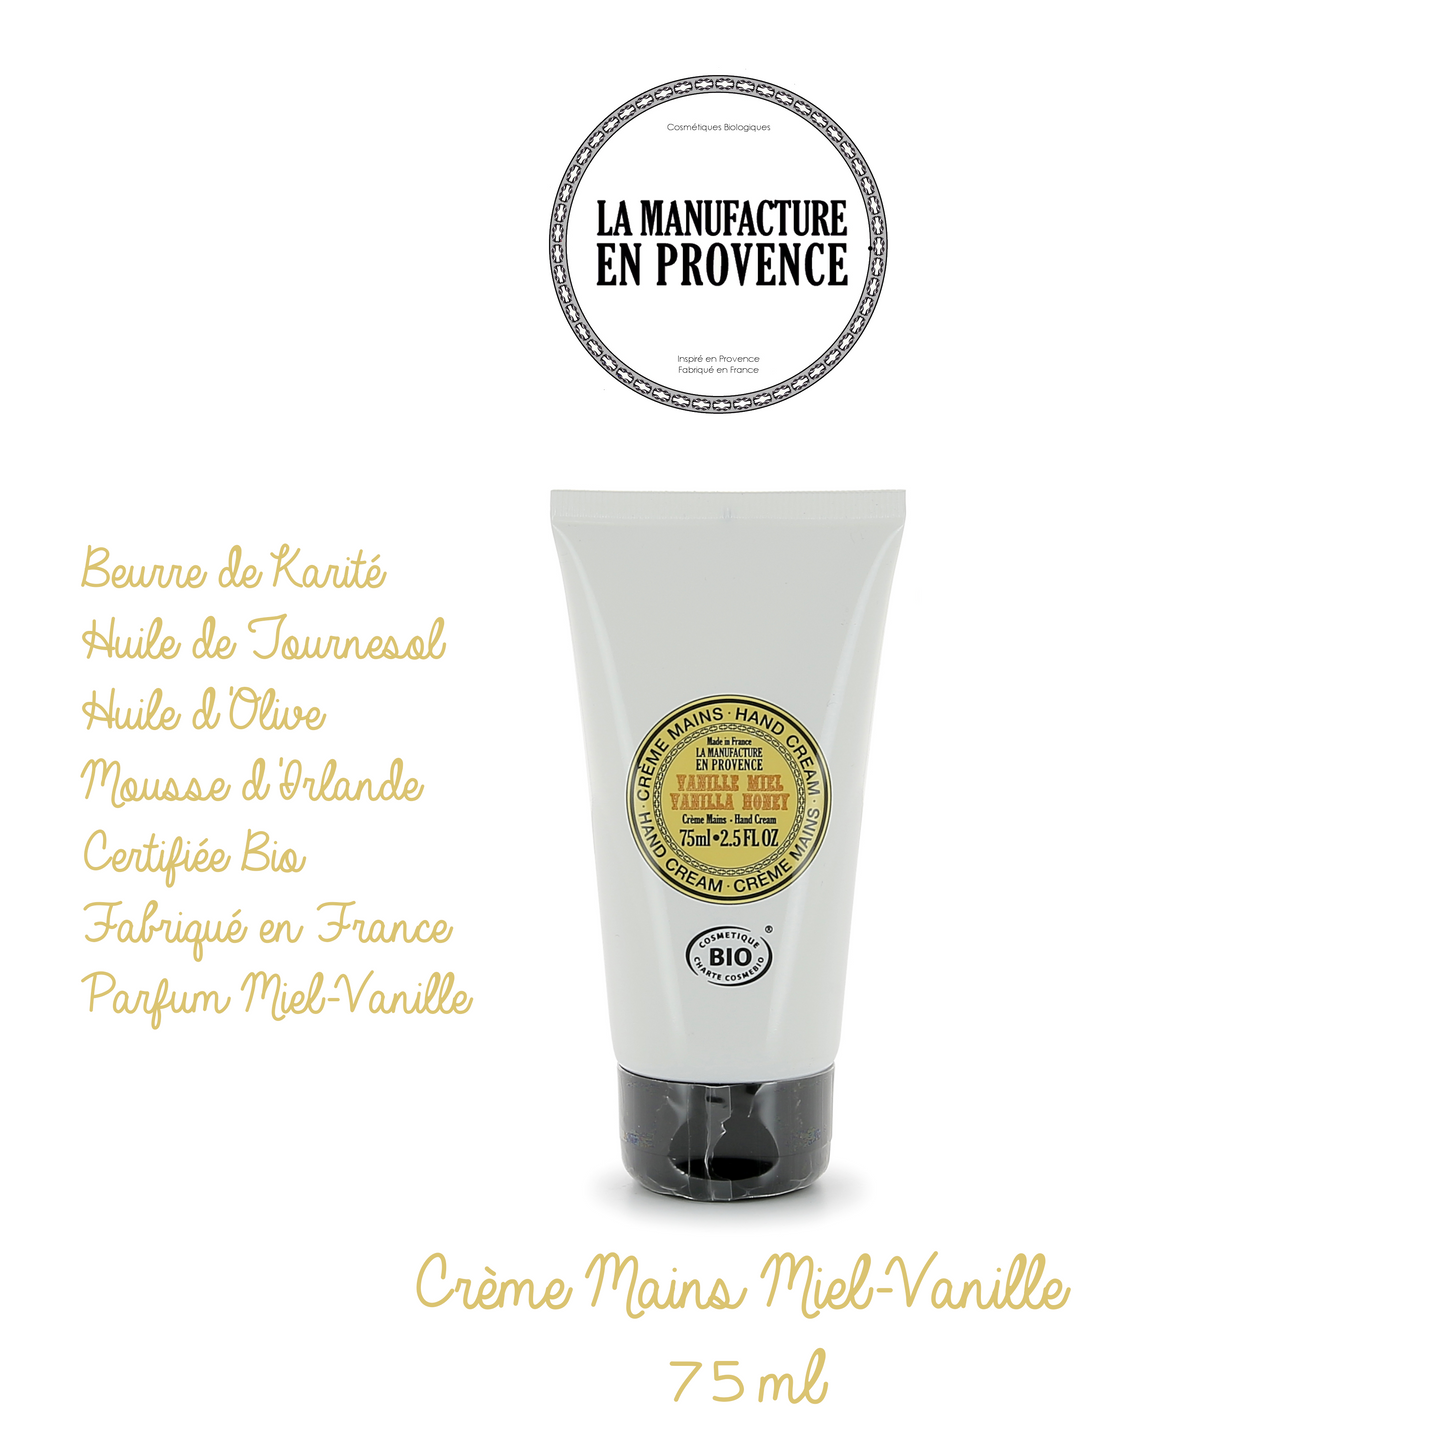 LA MANUFACTURE EN PROVENCE - Crème Mains certifié BIO 75ml - Vanille/Miel